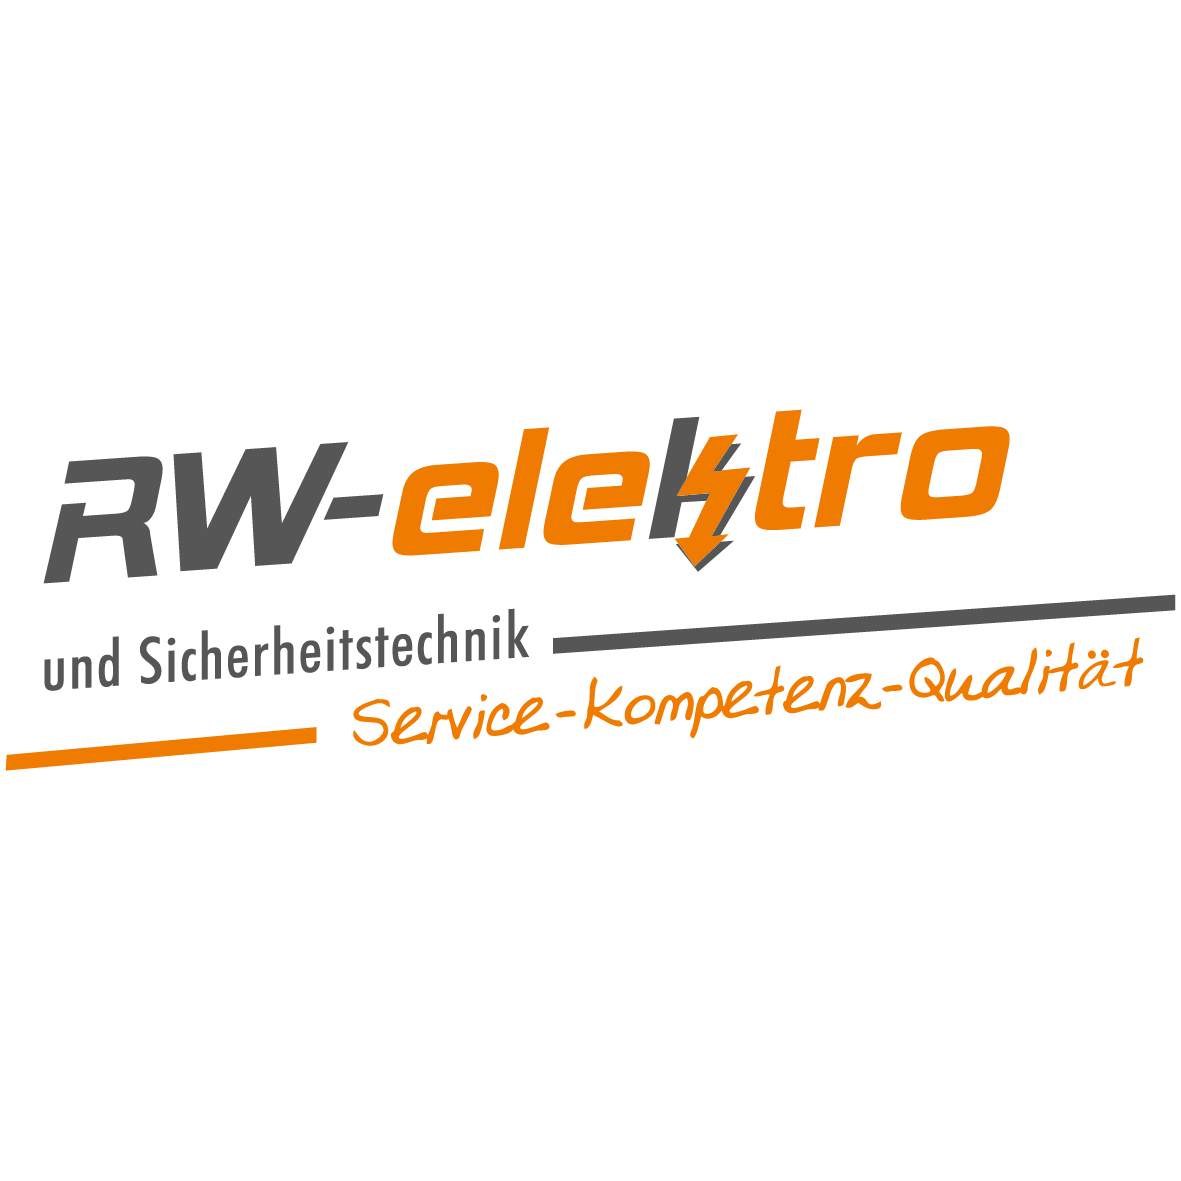 RW - elektro und Sicherheitstechnik Inh. Ralf Wittrock in Fleckeby - Logo